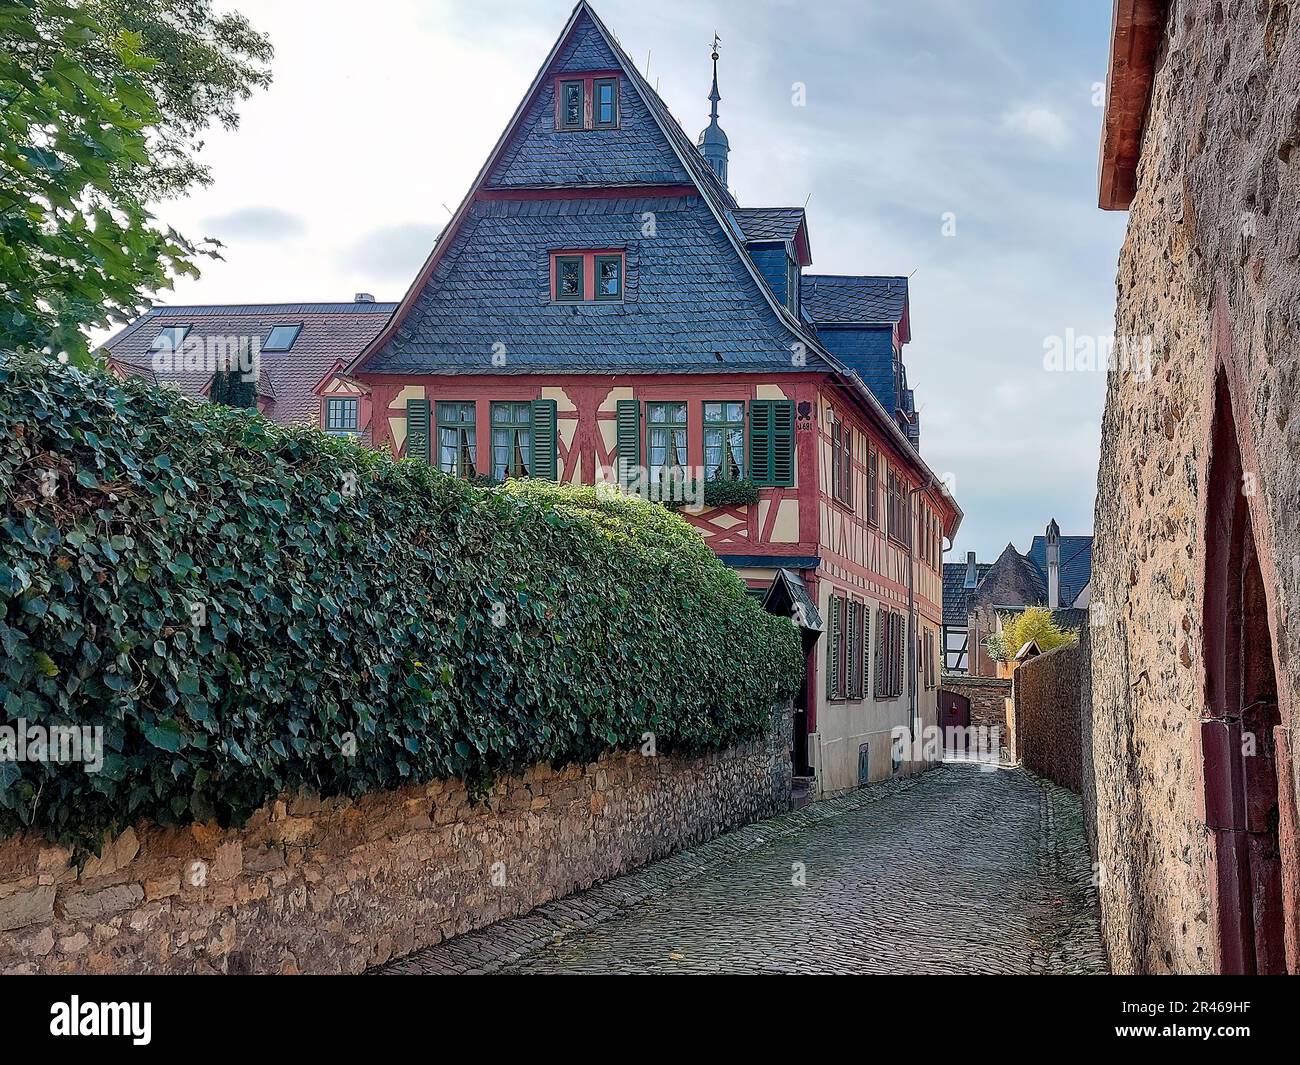 Un superbe cliché de la ville historique d'Eltville, en Allemagne, située sur les rives du Rhin Banque D'Images